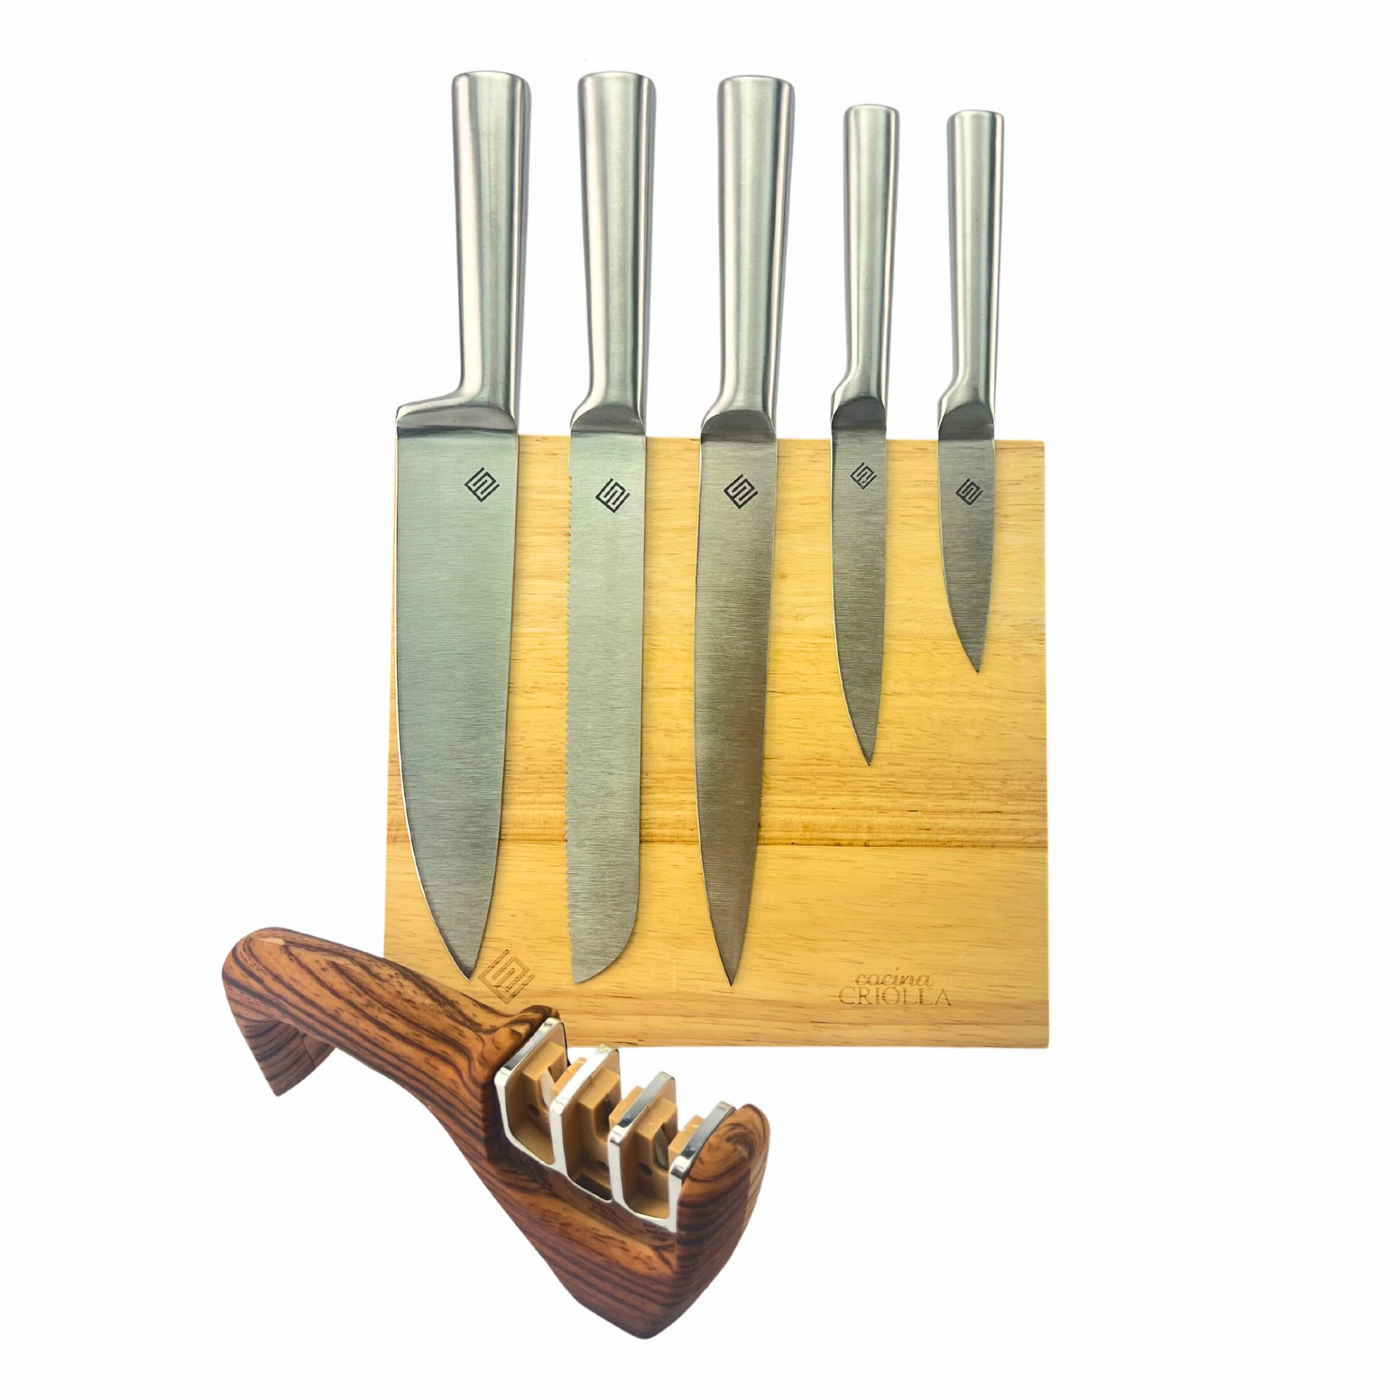 iCook™ Juego de cuchillos de 5 piezas